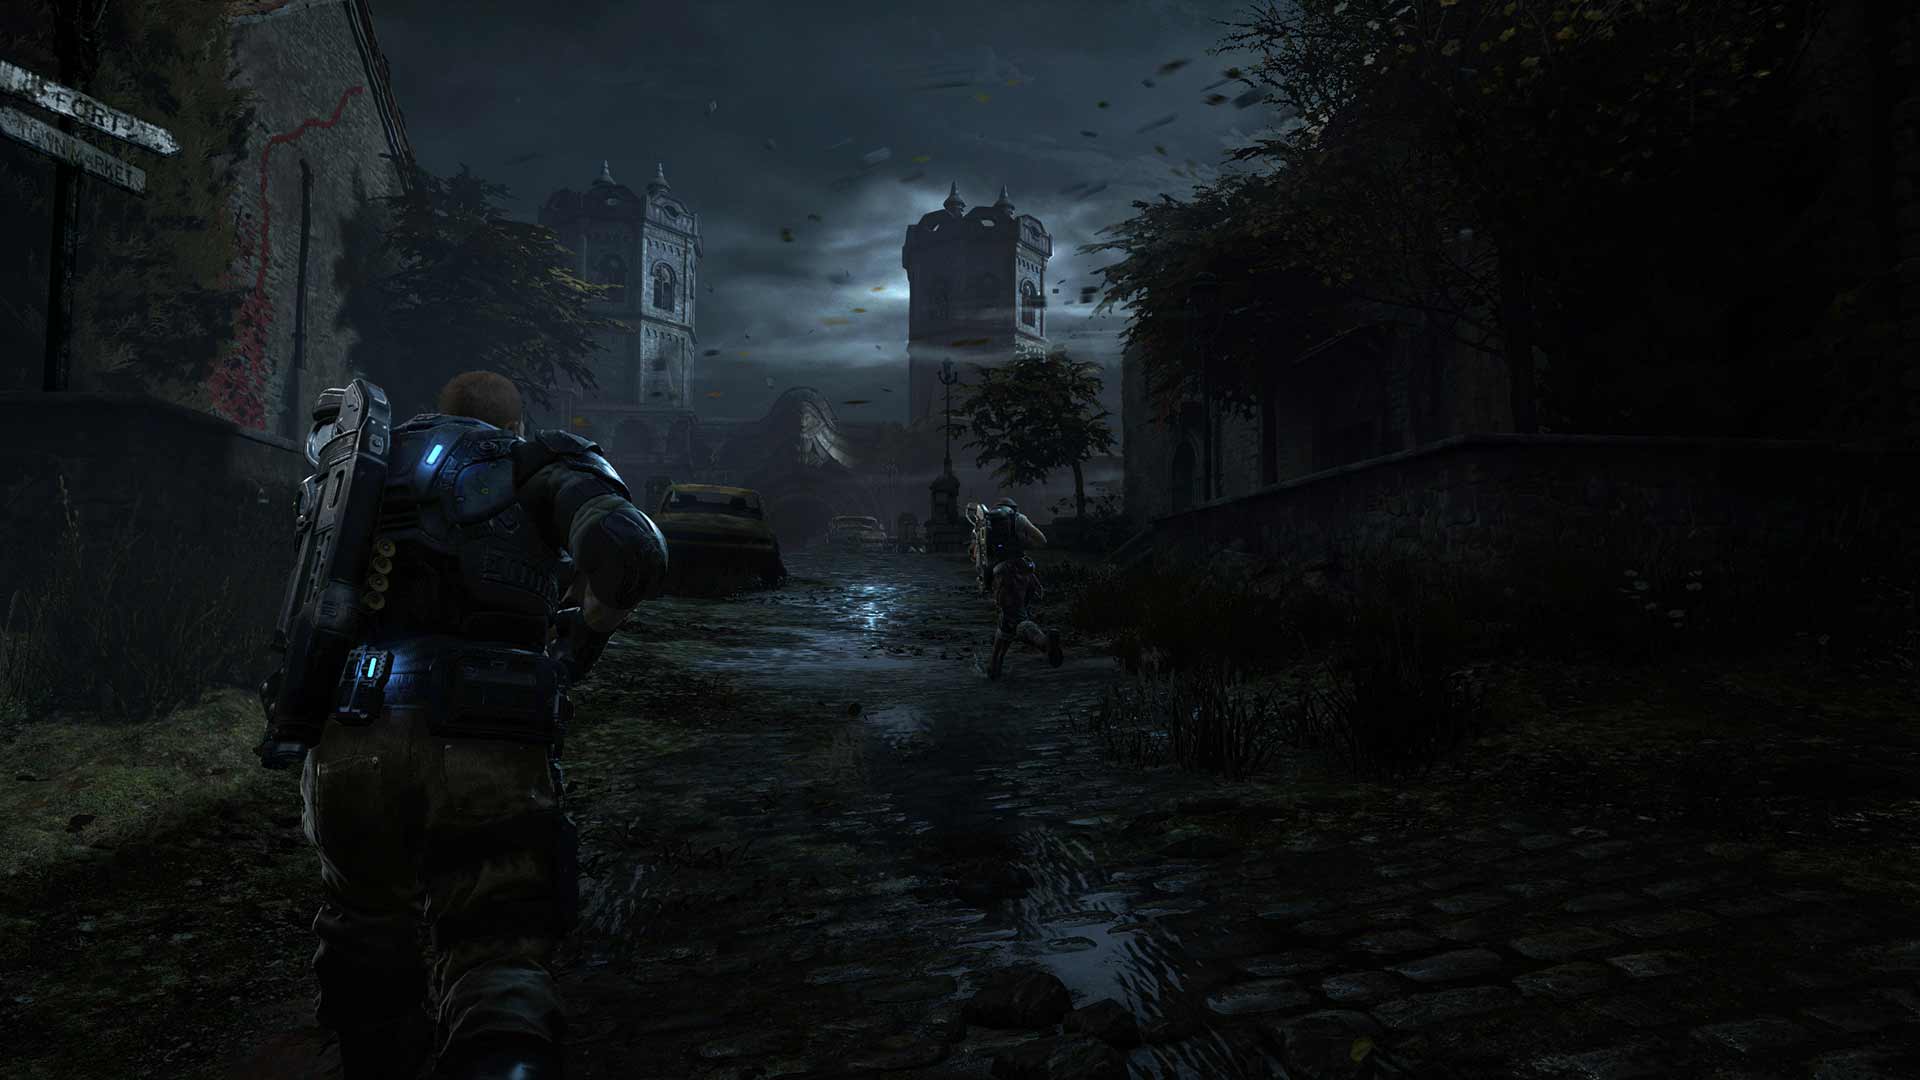 Immagine pubblicata in relazione al seguente contenuto: Microsoft Studios pubblica la data di lancio del game Gears of War 4 | Nome immagine: news24087_Gears-of-War-4-Screenshot_2.jpg